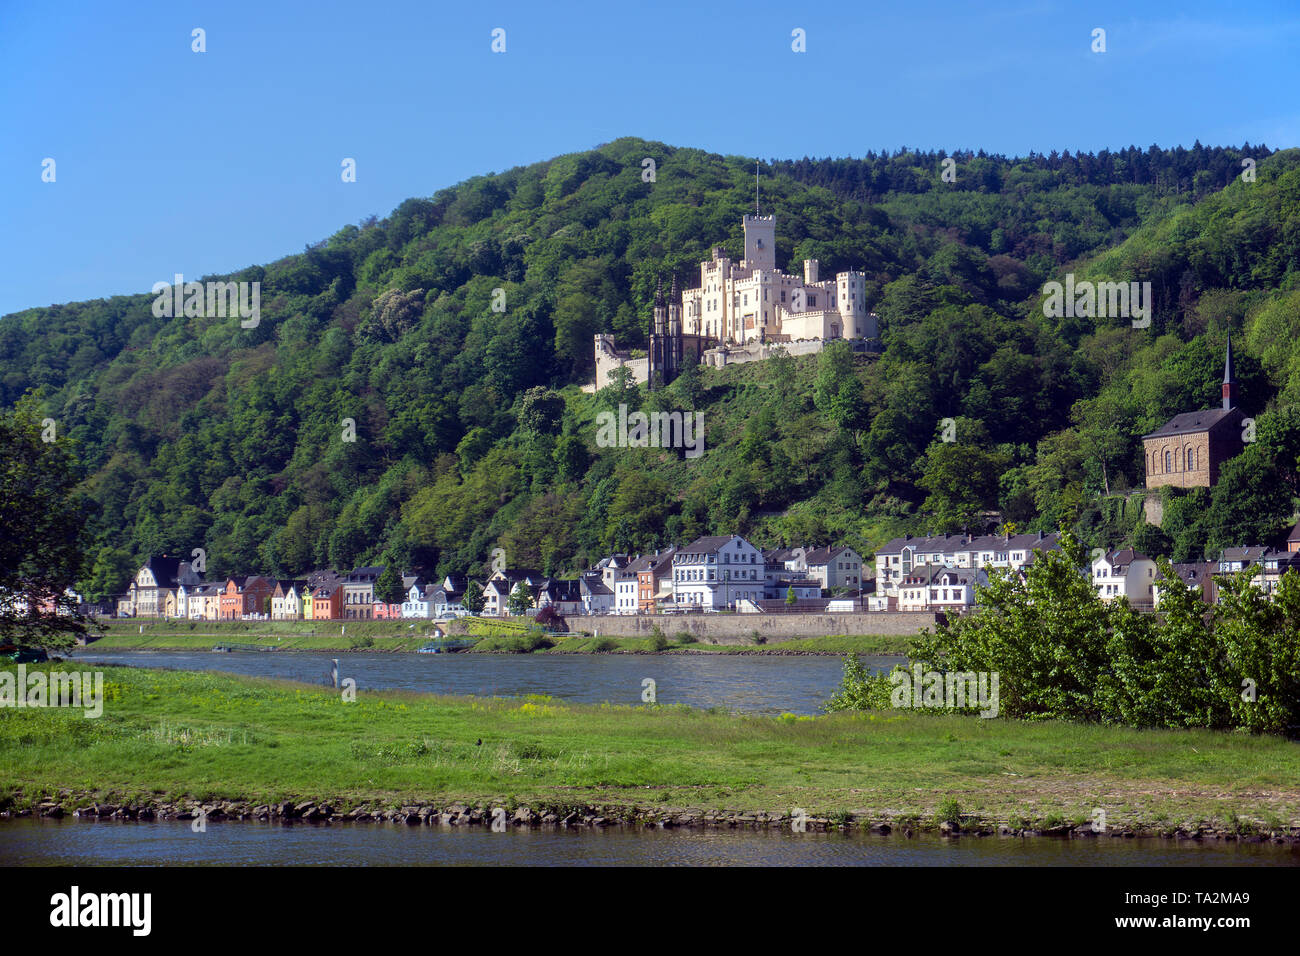 Château de Stolzenfels, palais néo-gothique dans la ville Coblence, site du patrimoine mondial de l'UNESCO, Vallée du Haut-Rhin moyen, Rhénanie-Palatinat, Allemagne Banque D'Images